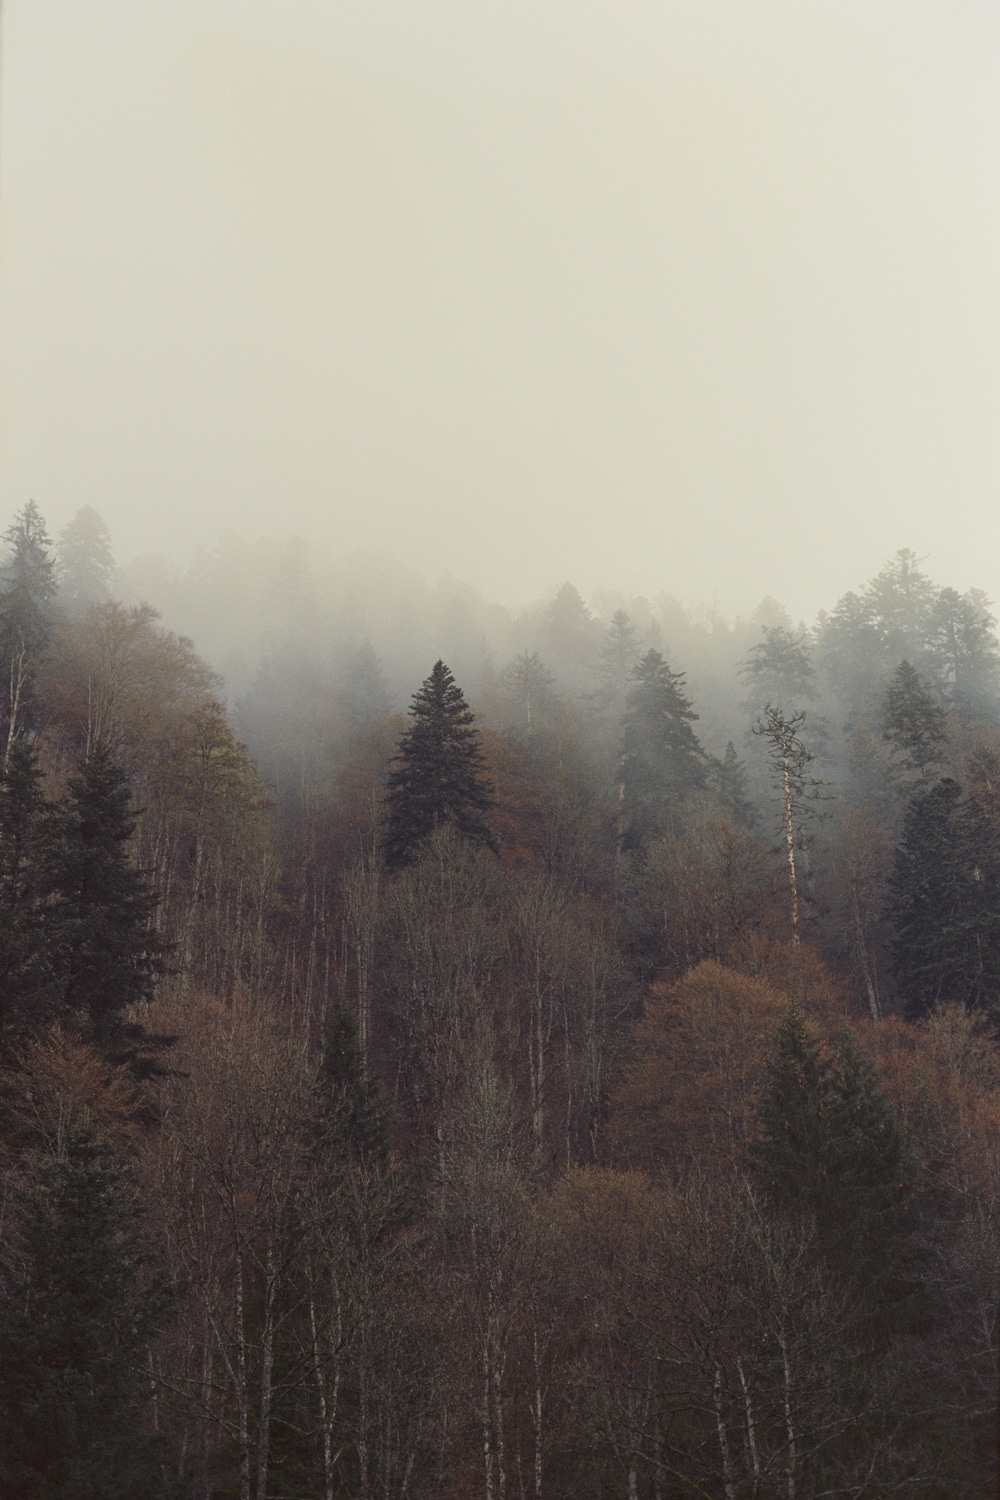 Trees in the mist by Simon Feller